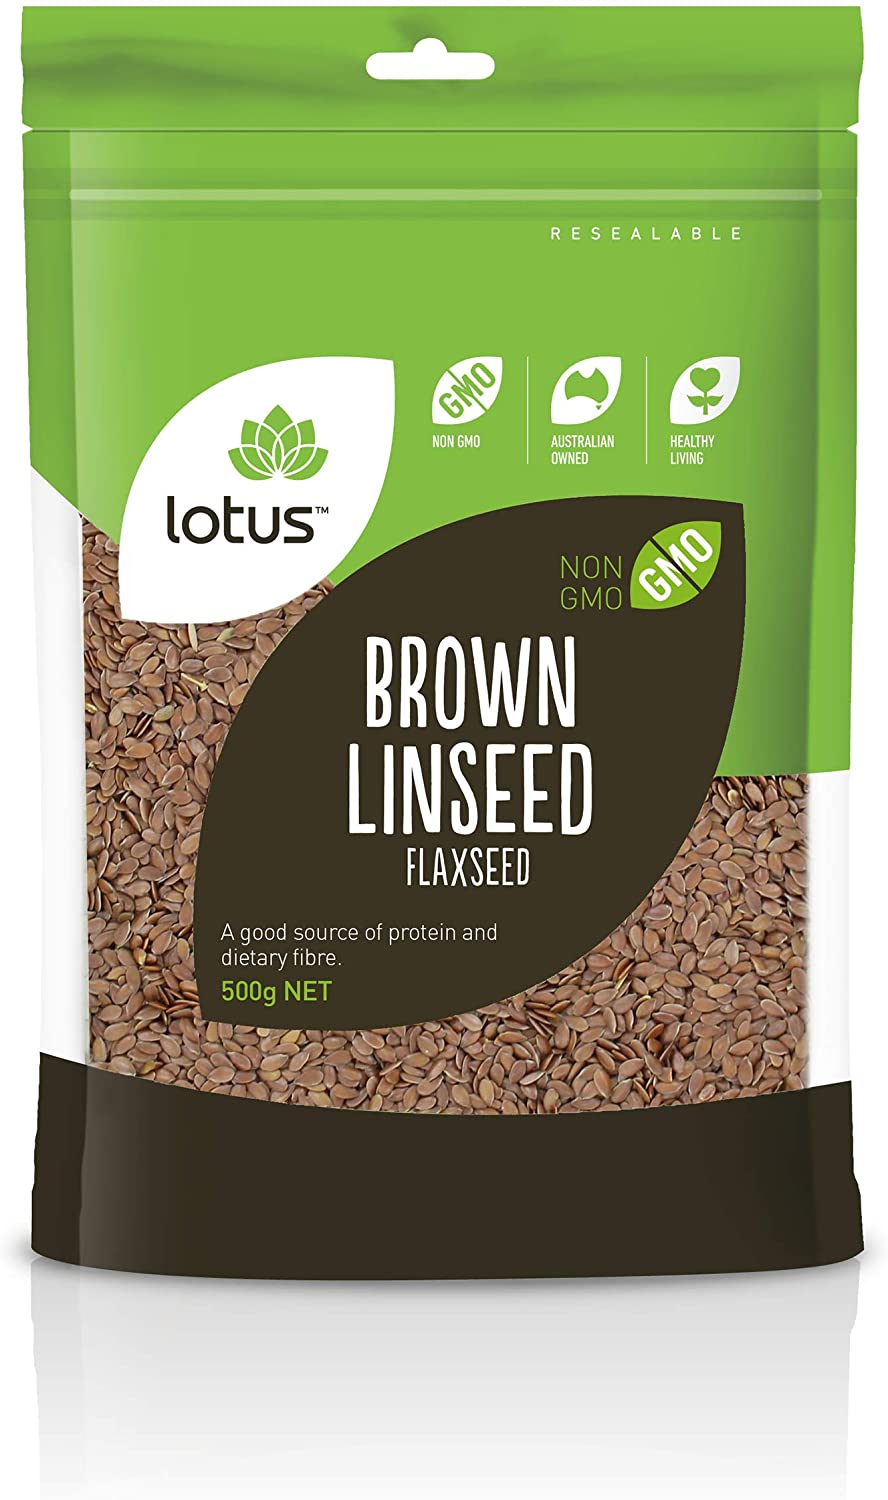 LOTUS Brown Linseed / Flaxseed 500g